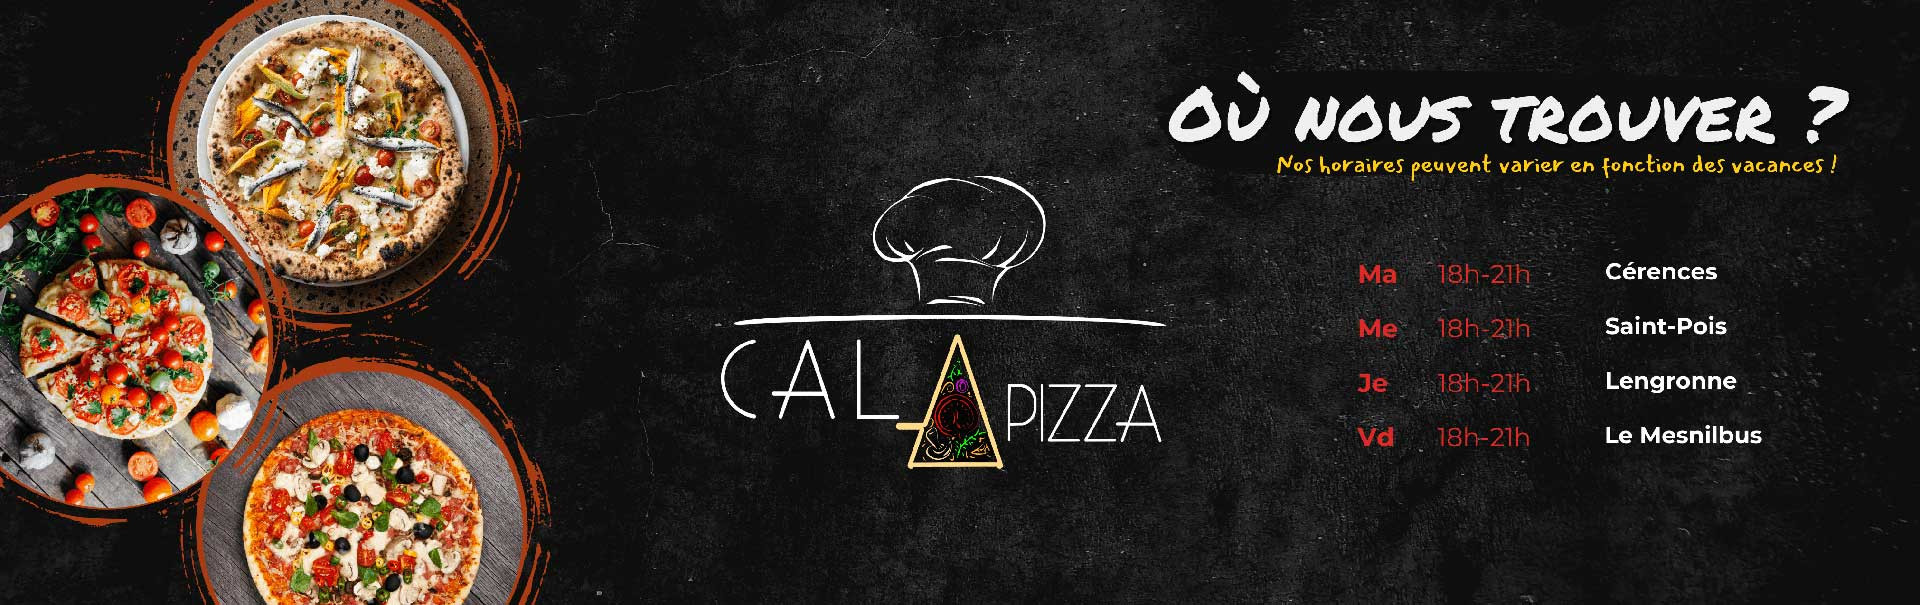 Cala Pizza - Lieux et horaires